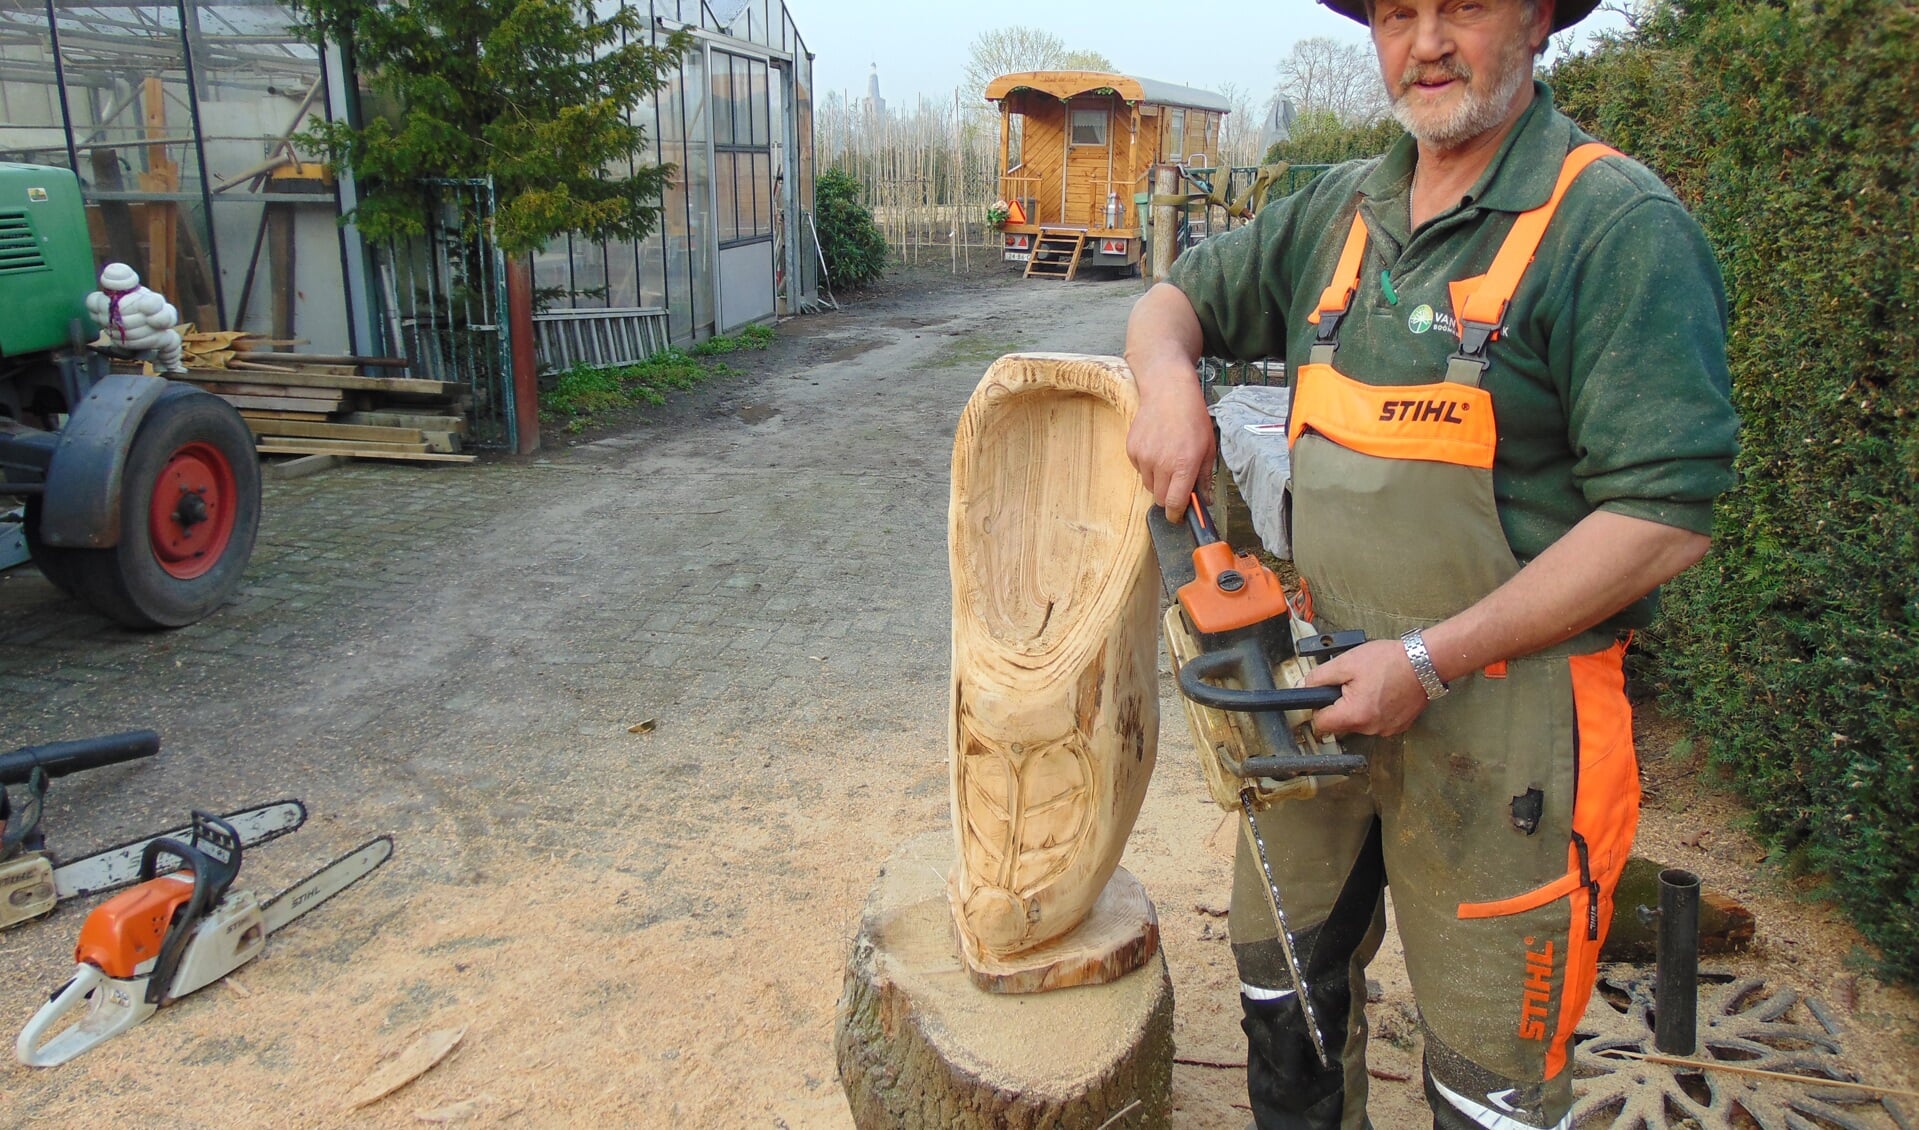 Jos Heijmans maakt met zijn motorzaag prachtige houtsculpturen.